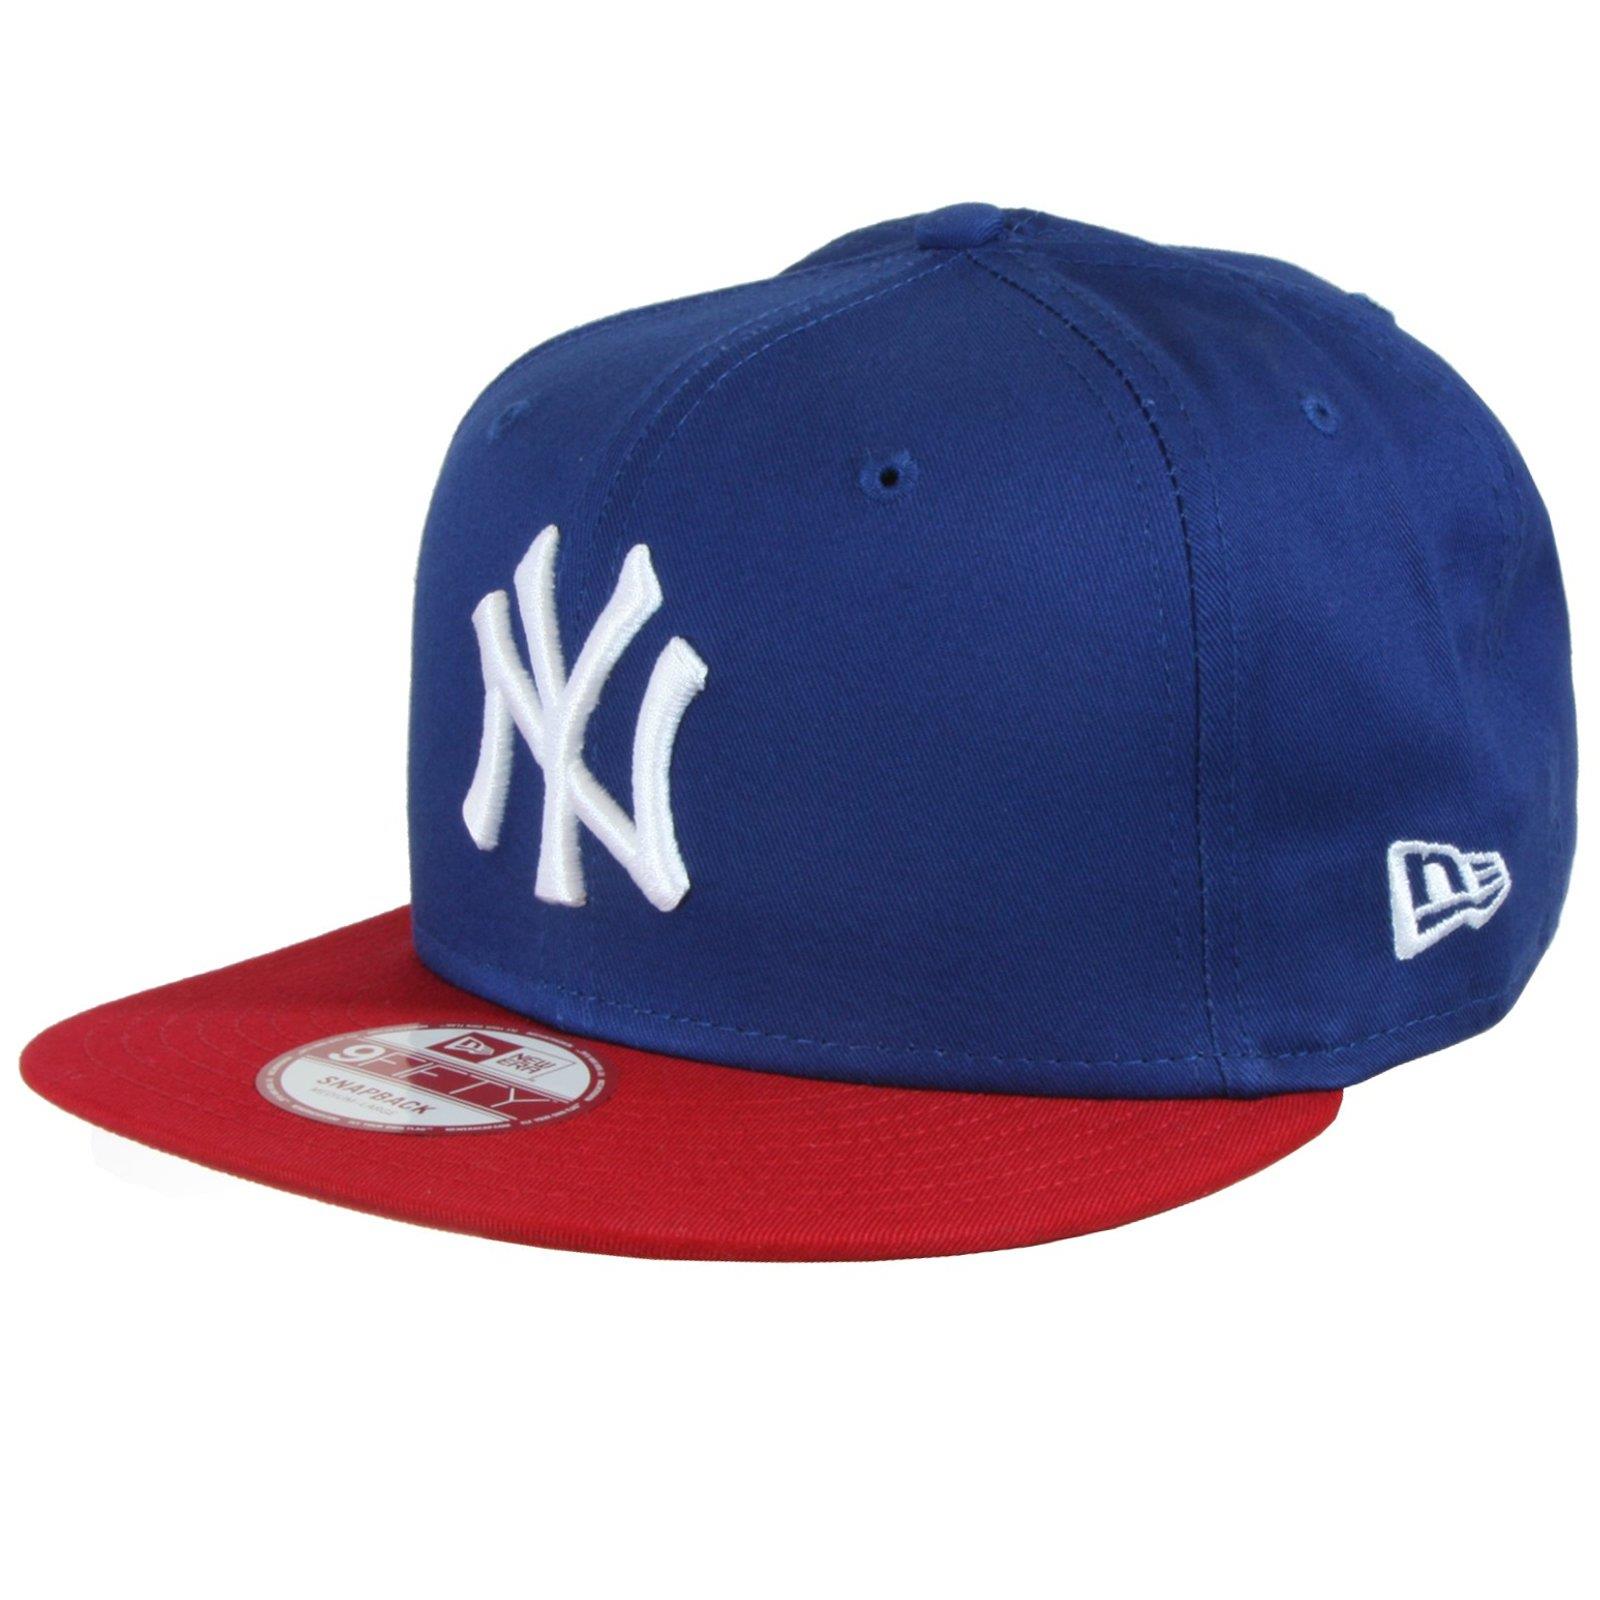 New Era Snapback NY Cap MLB New York Yankees Blau Rot Snap Mütze 9Fifty Baseball